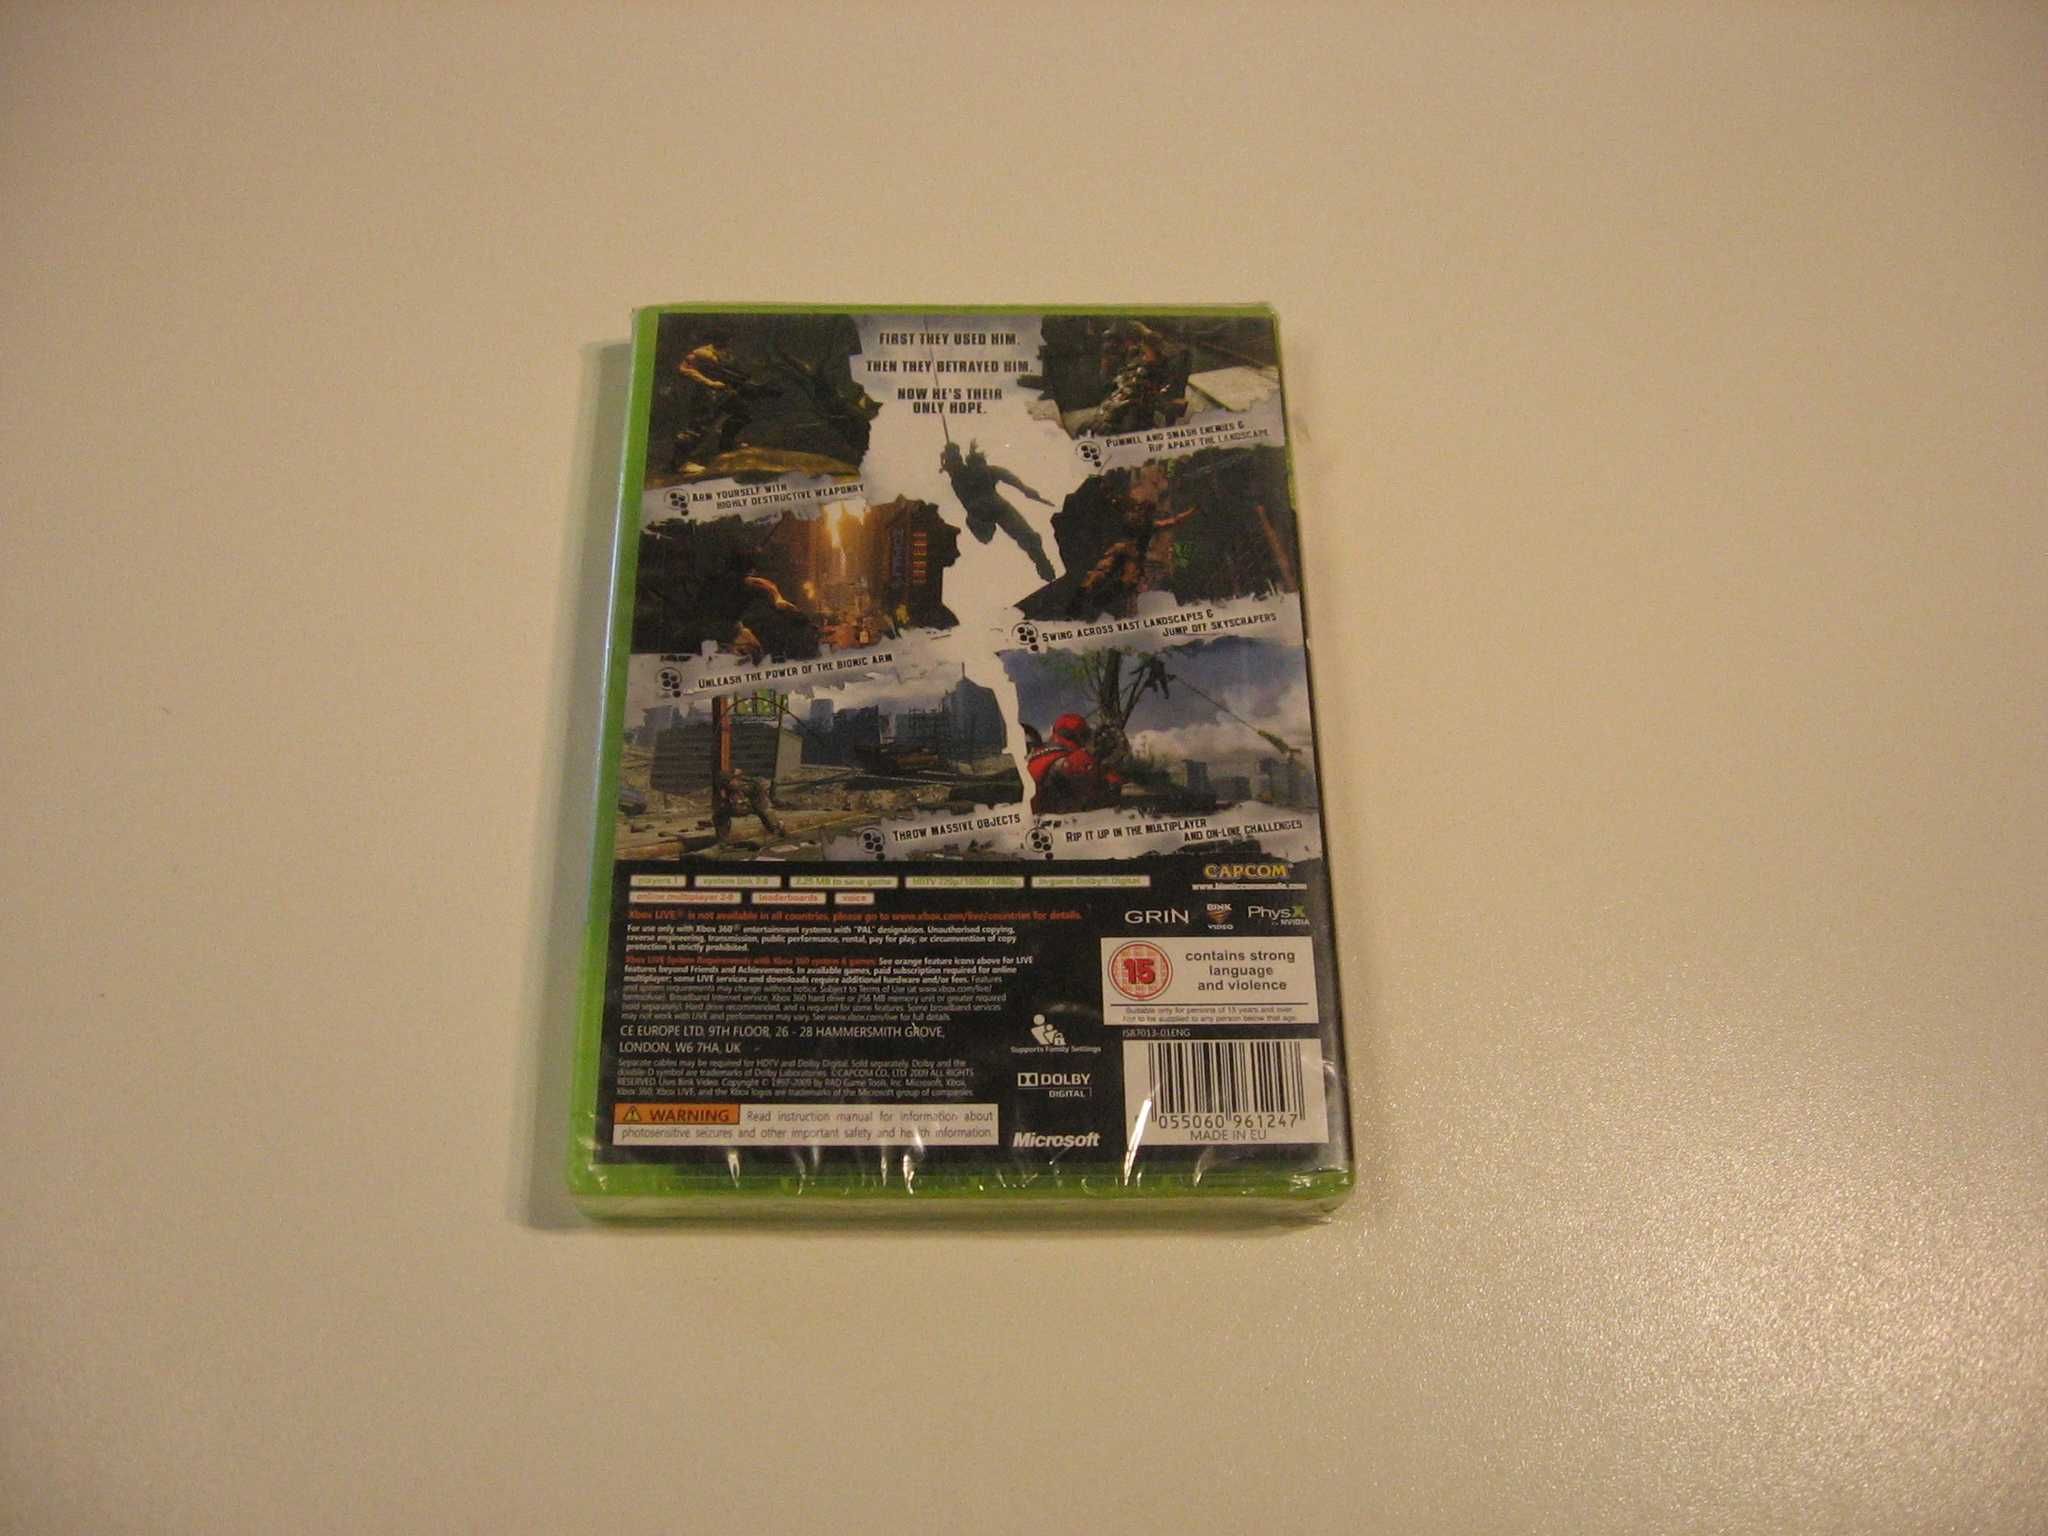 Bionic Commando - GRA Xbox 360 - Opole 2563